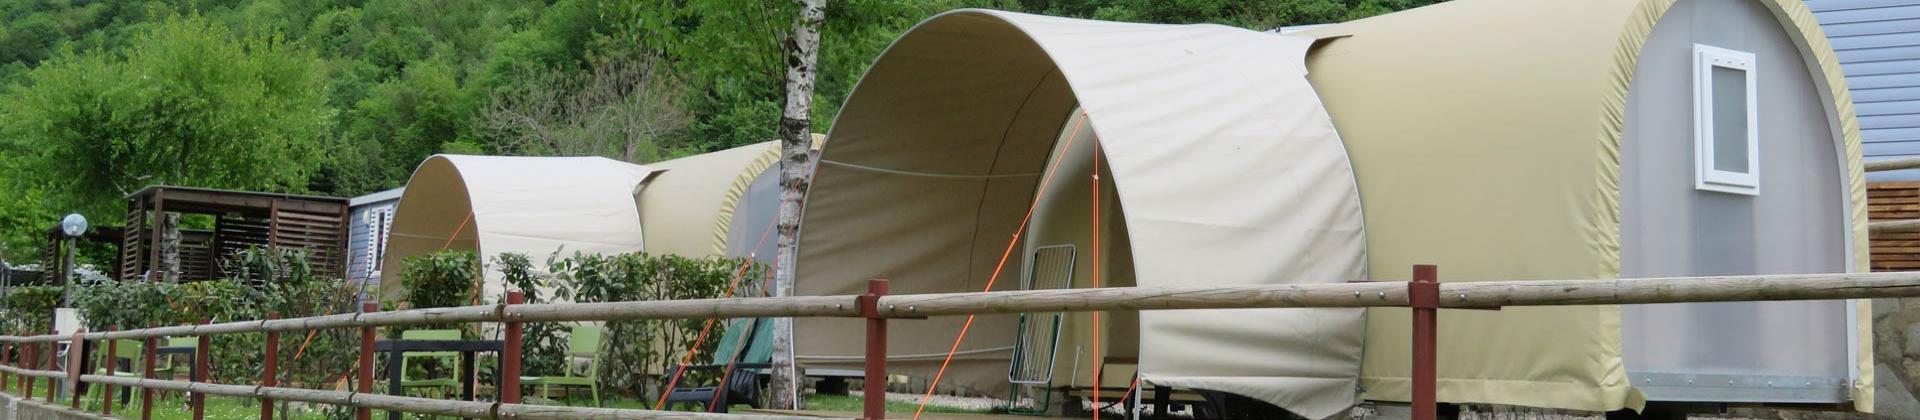 campingdarna en coco-sweet-tents 013